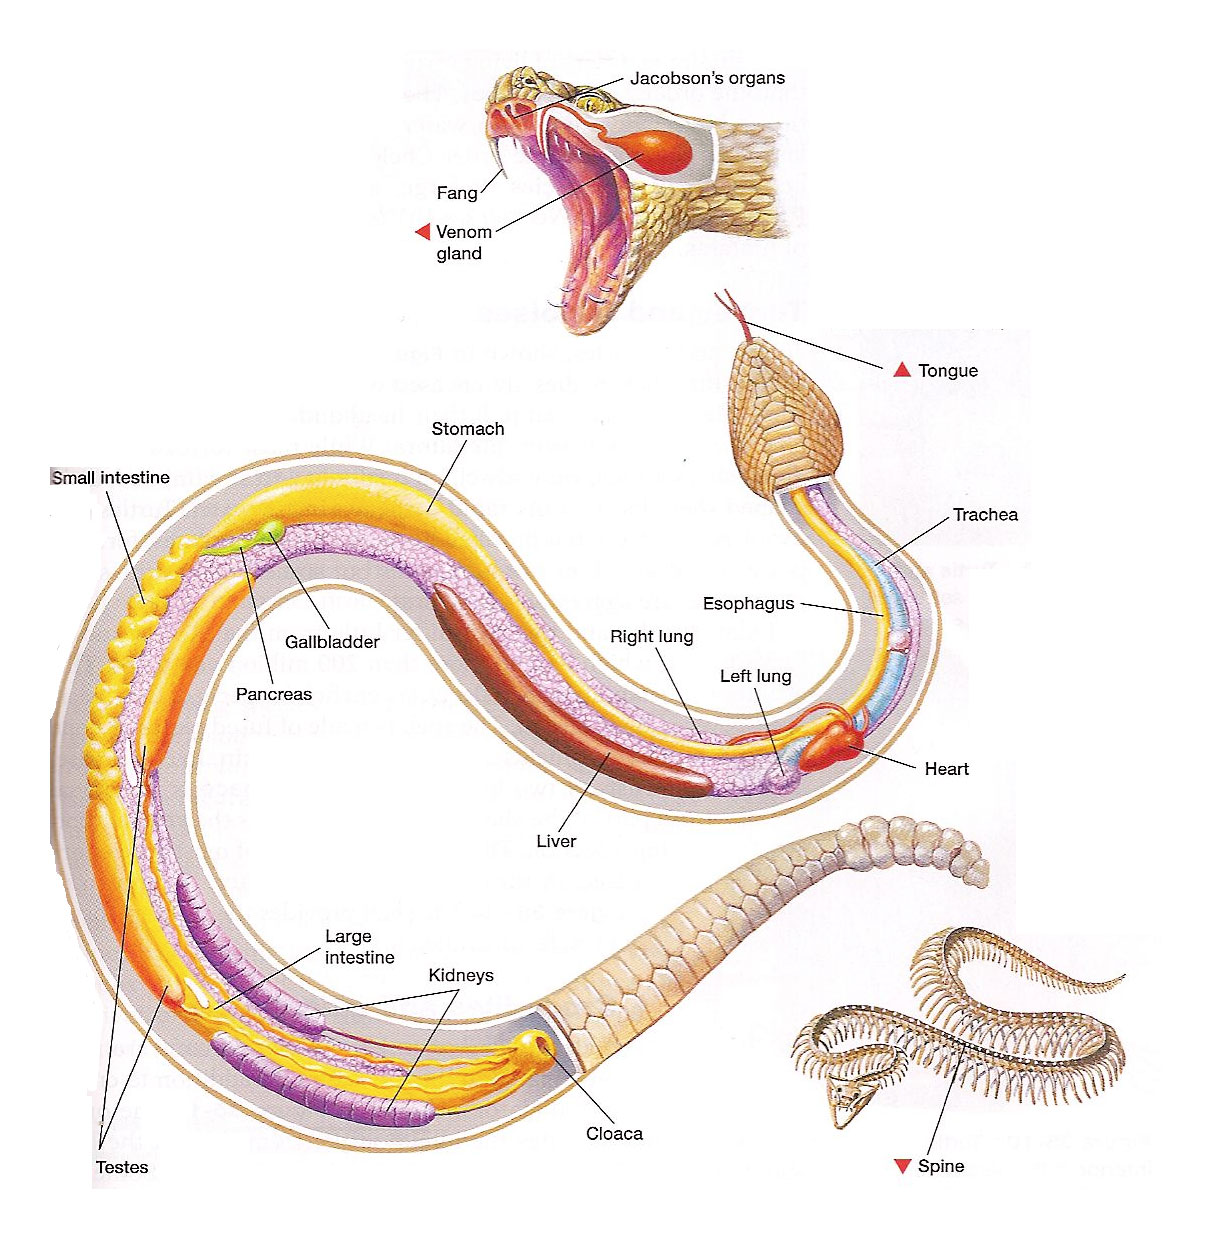 Snake diagram